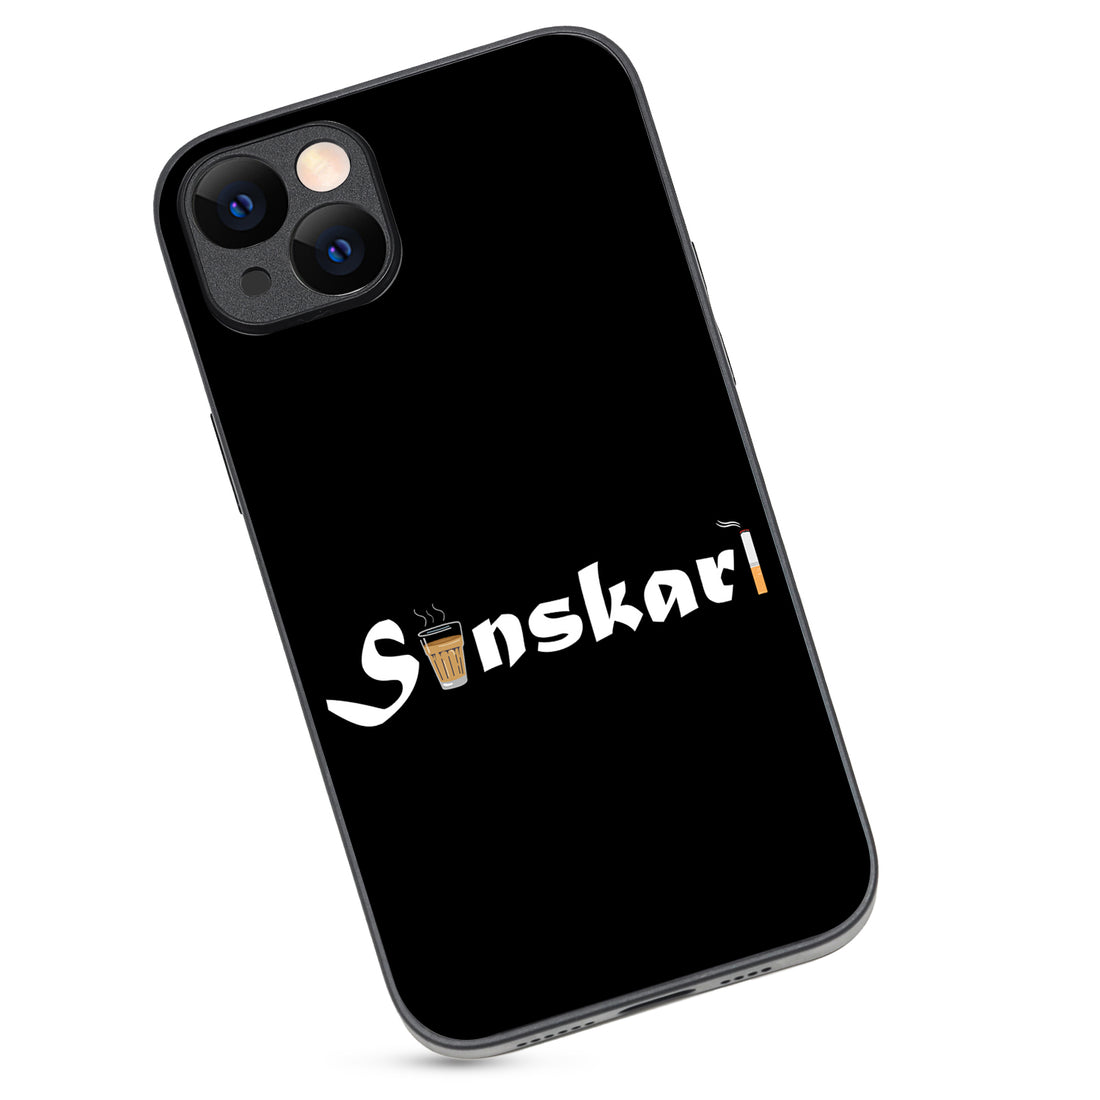 Sanskari Uniword iPhone 14 Plus Case